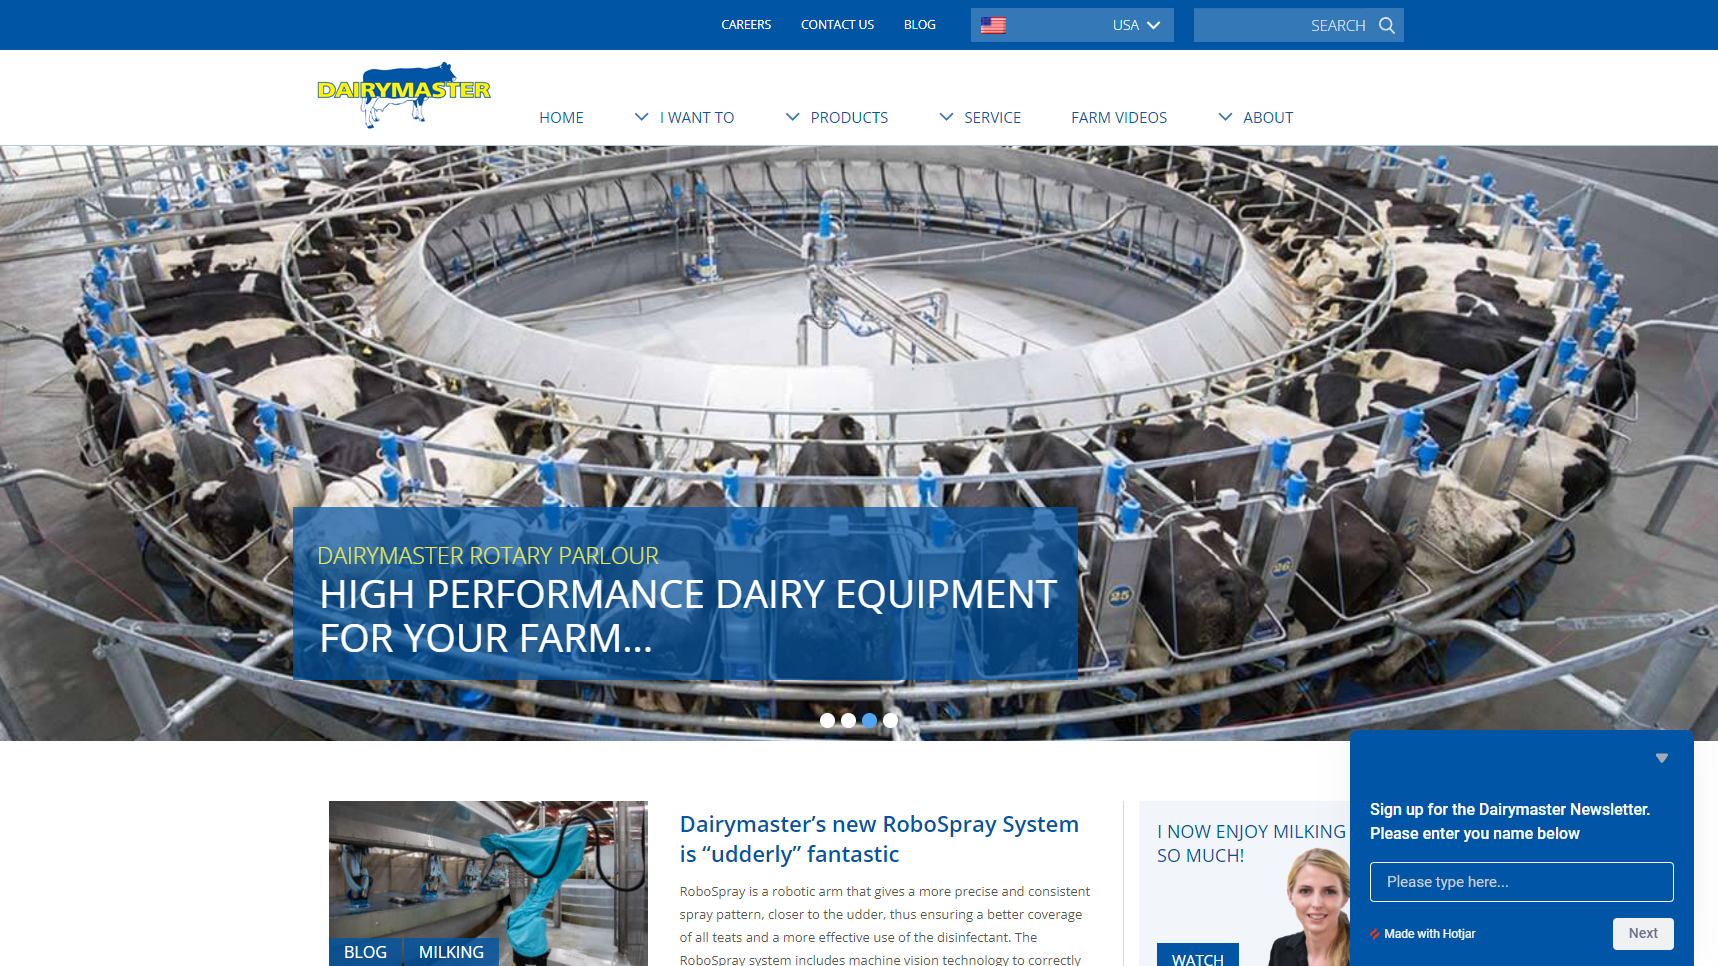 Dairymaster - Dairy Equipment Manufacturer